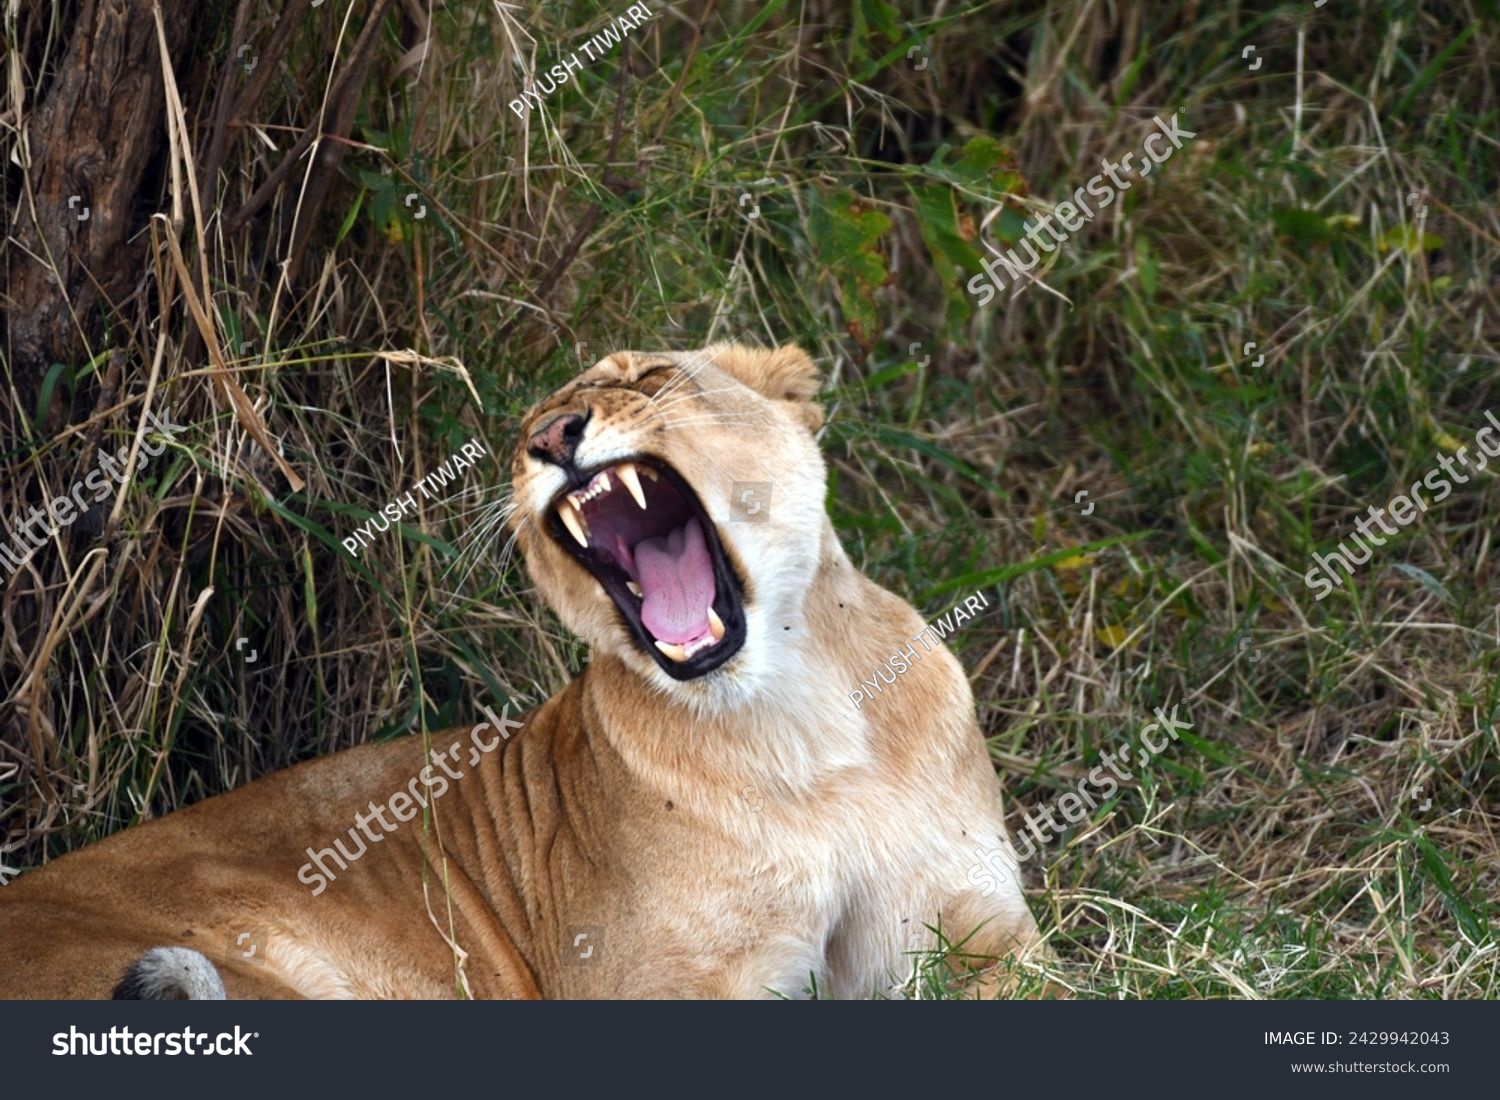 Lions at Maasai Mara Kenya #2429942043